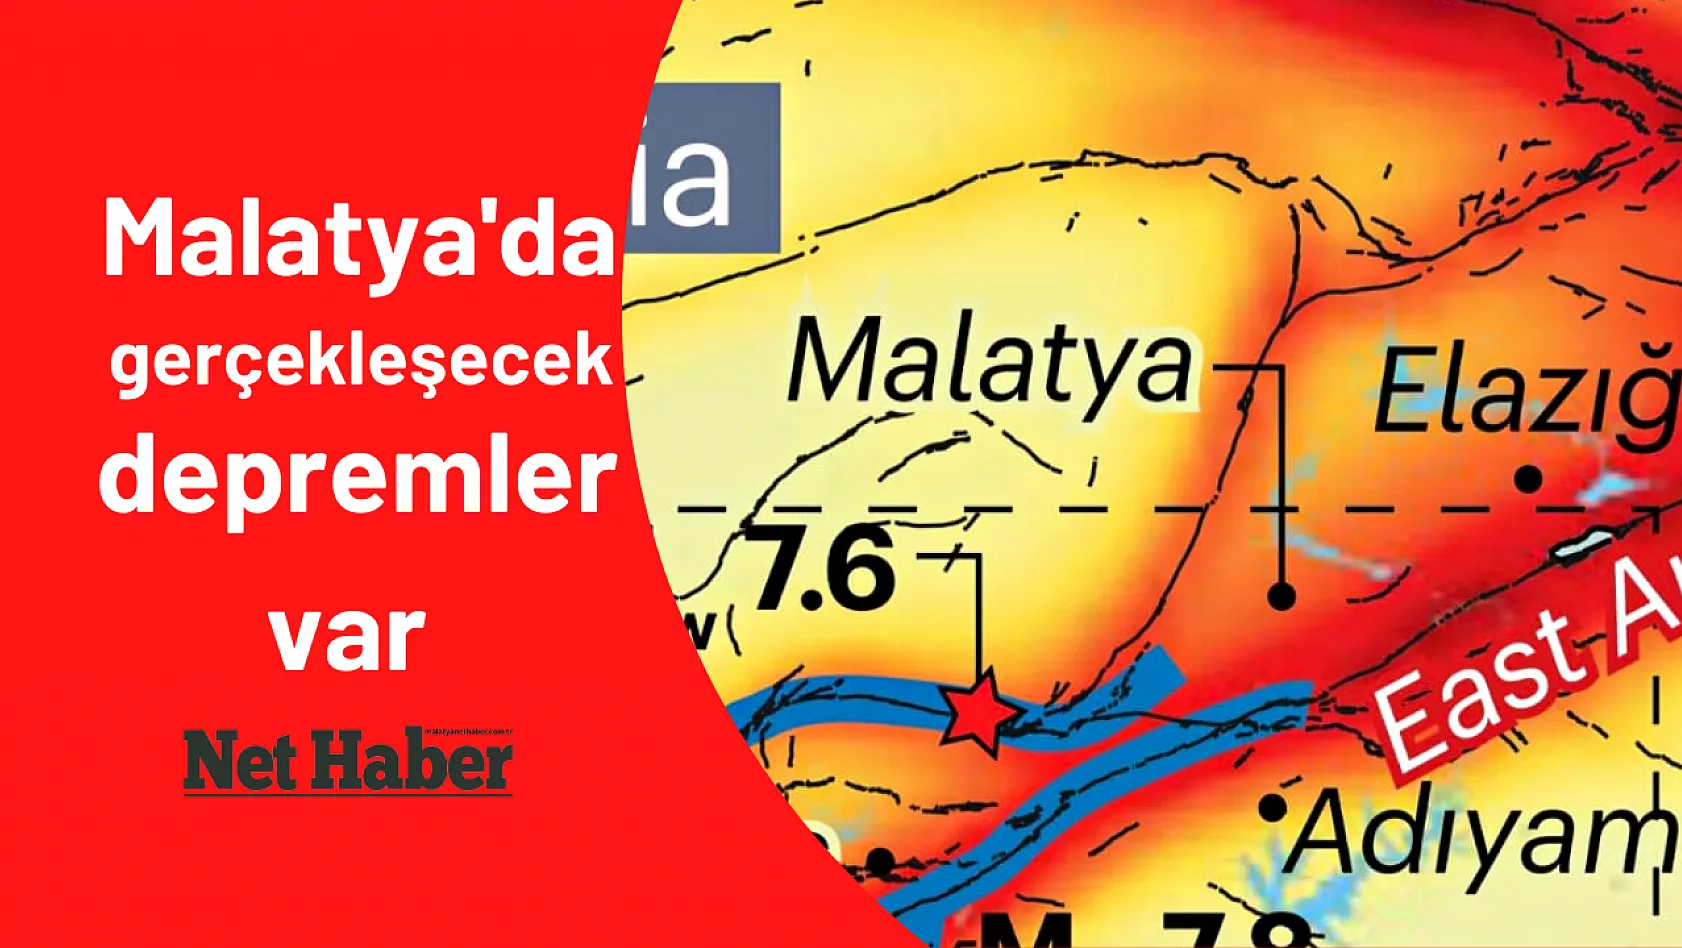 Malatya'da gerçekleşecek depremler var 